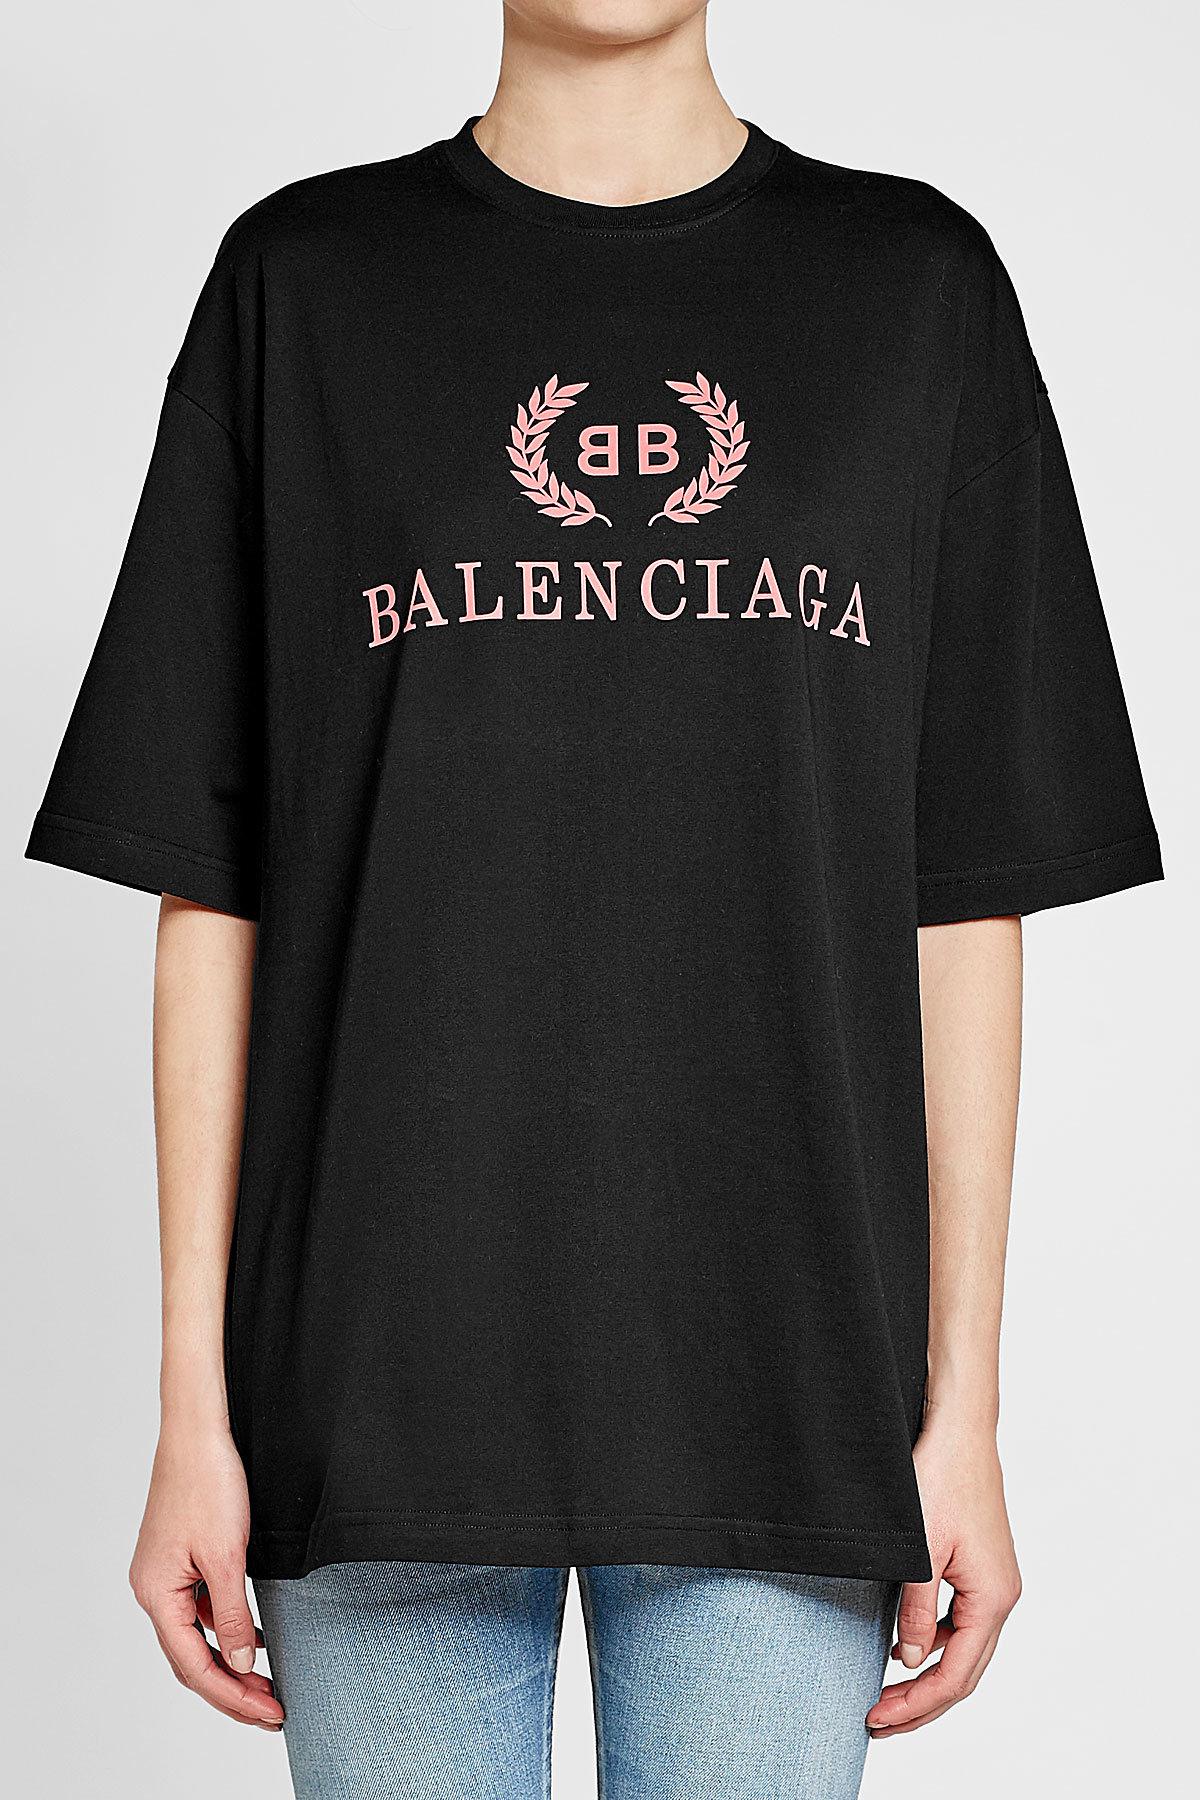 Balenciaga Logo Shirt - Black Balenciaga Paris logo cotton T-shirt ...